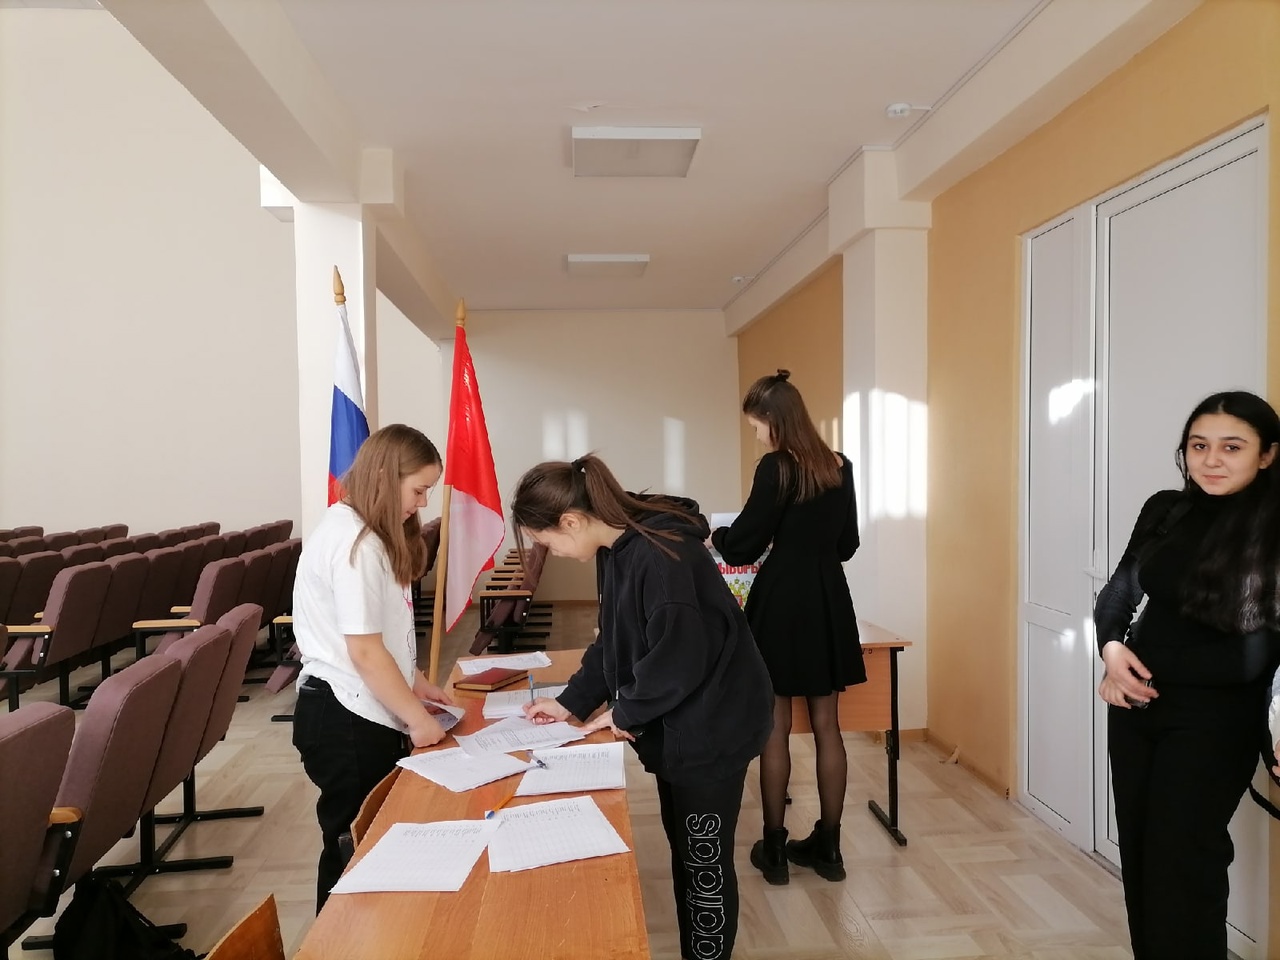 27 октября в МОУ ВЦО №2 прошли Выборы Председателя Совета старшеклассников (РСМ) - лидера ученического самоуправления..